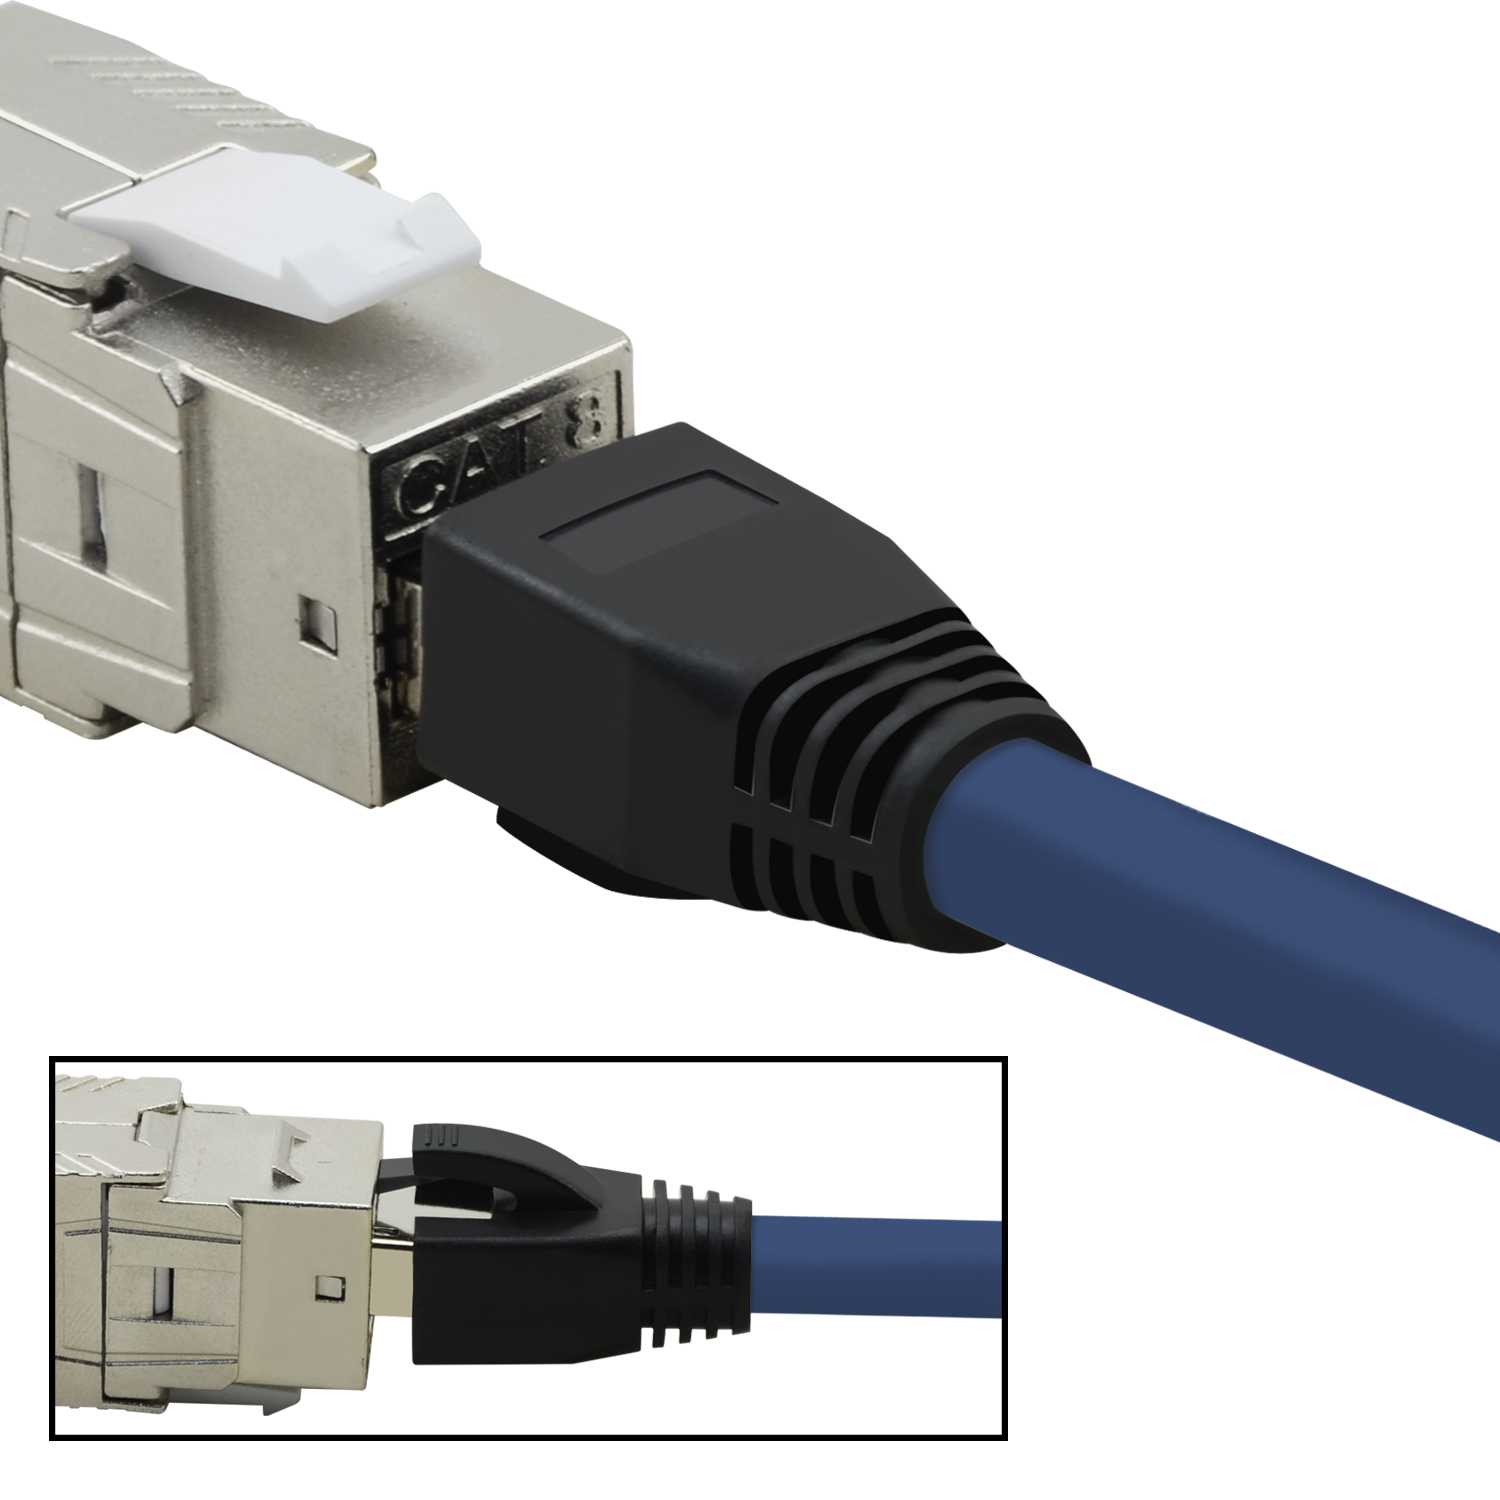 TPFNET 5er Pack 1,5 S/FTP Netzwerkkabel Patchkabel blau, m / Netzwerkkabel, GBit, 1,5m 40